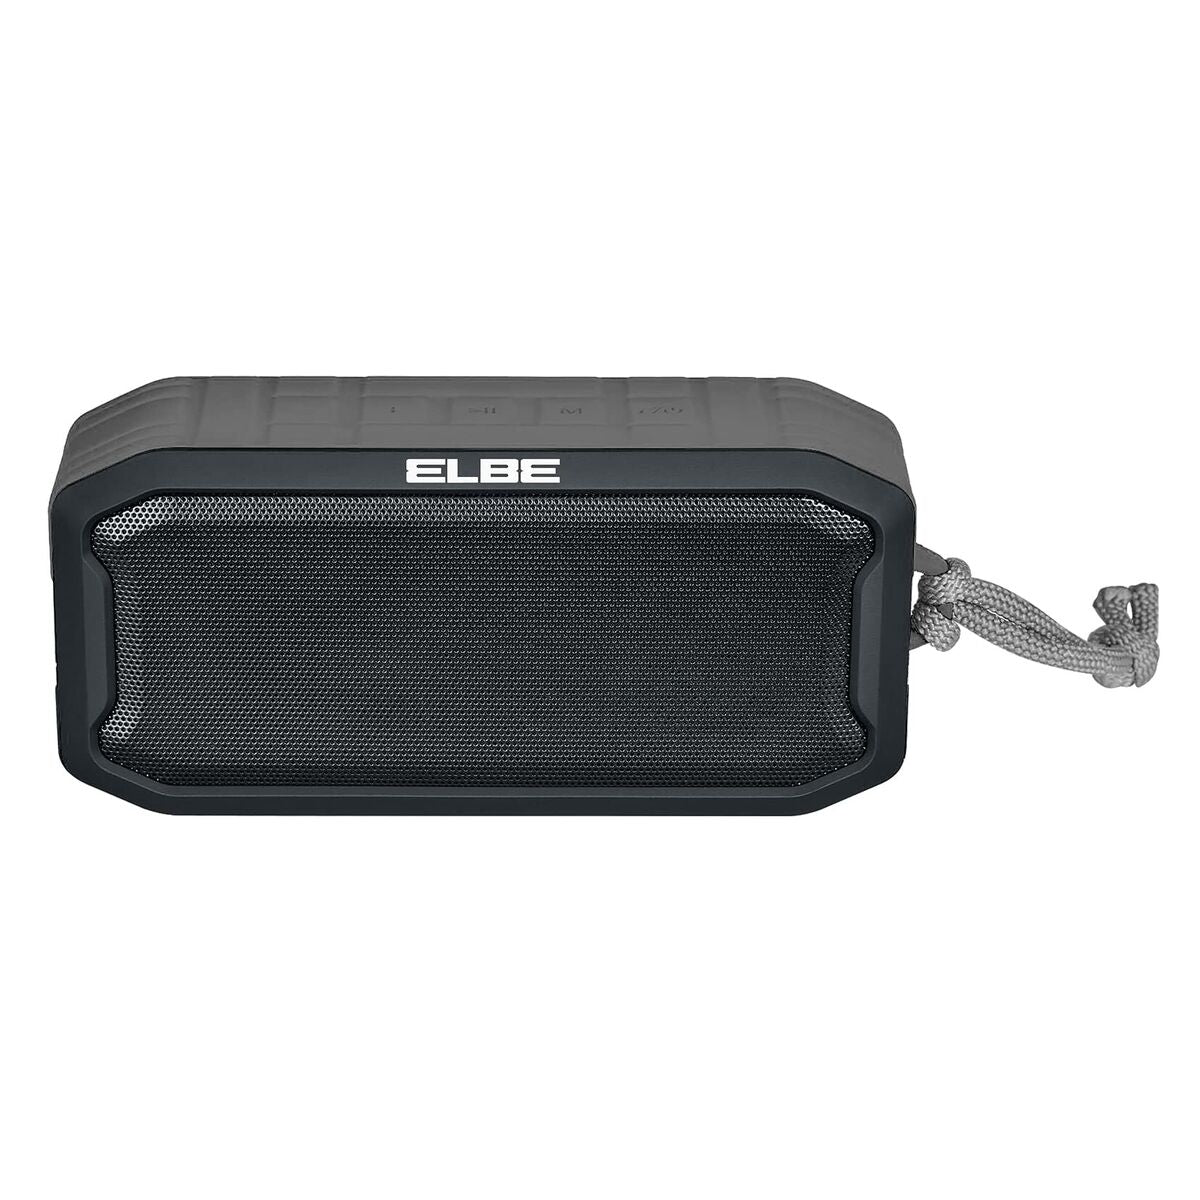 Portable loudspeaker Elbe black